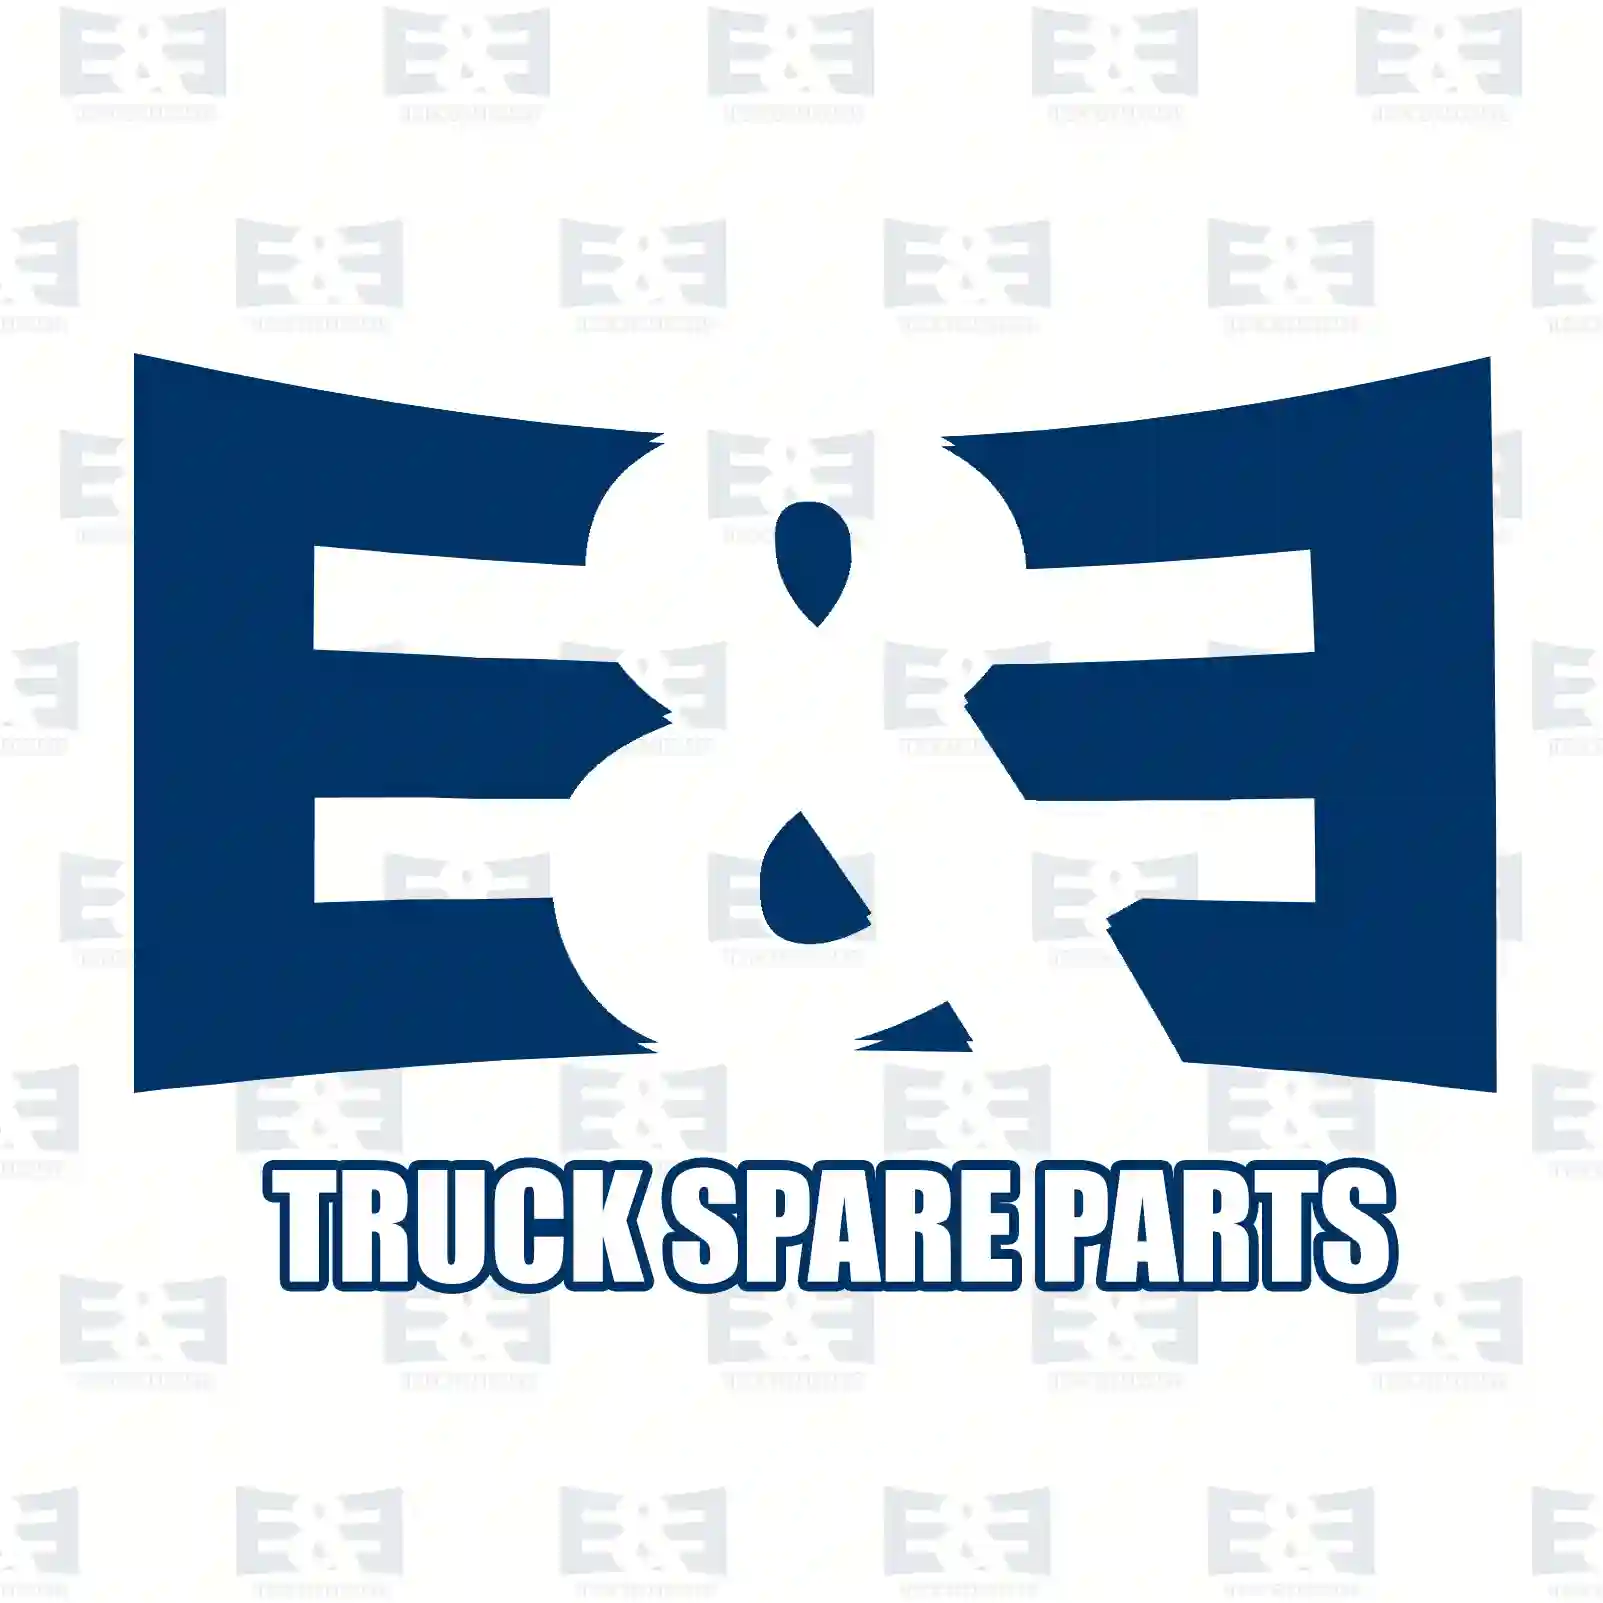 Propeller shaft, 2E2276748, 42103391 ||  2E2276748 E&E Truck Spare Parts | Truck Spare Parts, Auotomotive Spare Parts Propeller shaft, 2E2276748, 42103391 ||  2E2276748 E&E Truck Spare Parts | Truck Spare Parts, Auotomotive Spare Parts